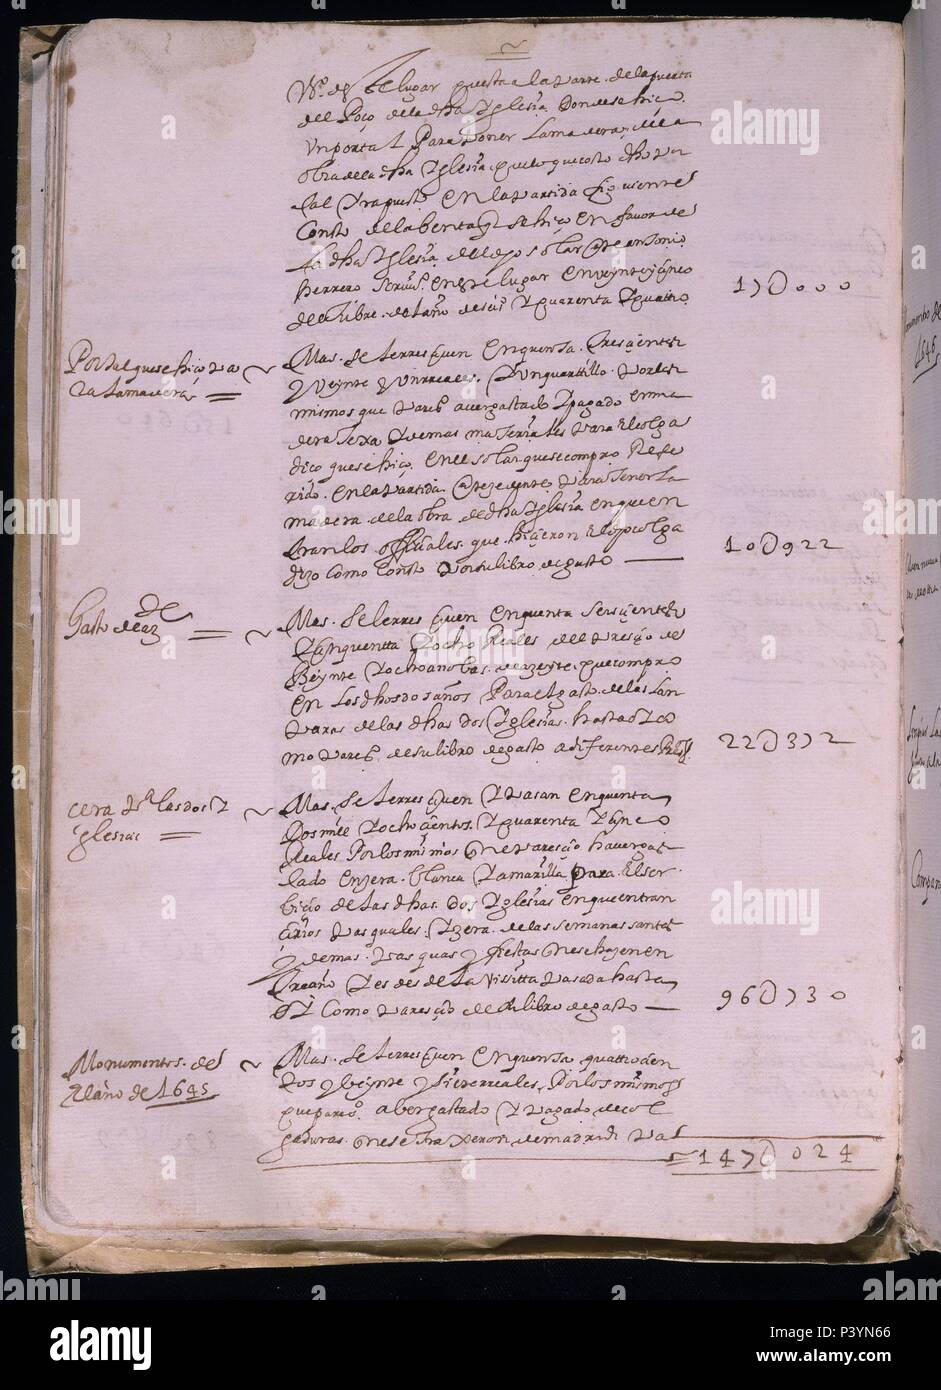 LIBRO DE FABRICA - CUENTAS DE LA CATEDRAL DE GETAFE - Nº4 - FOLIO 25V - AÑO 1644/1692. Location: ARCHIVO HISTORICO DIOCESANO, GETAFE, MADRID, SPAIN. Stock Photo